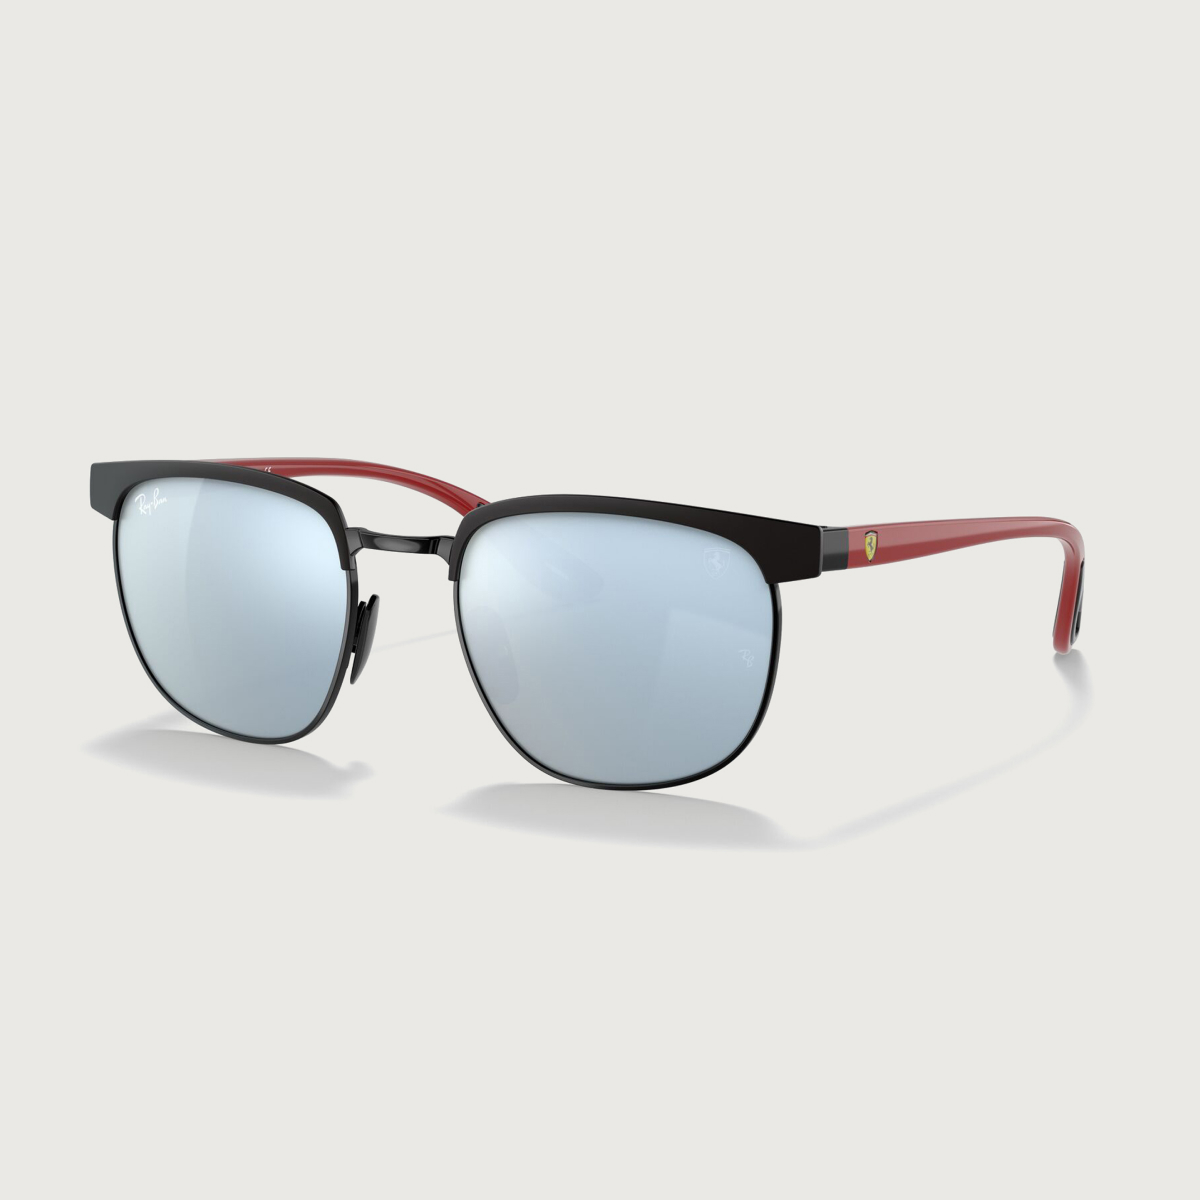 Black and red Ray-Ban for Scuderia Ferrari sunglasses with silver mirror finish